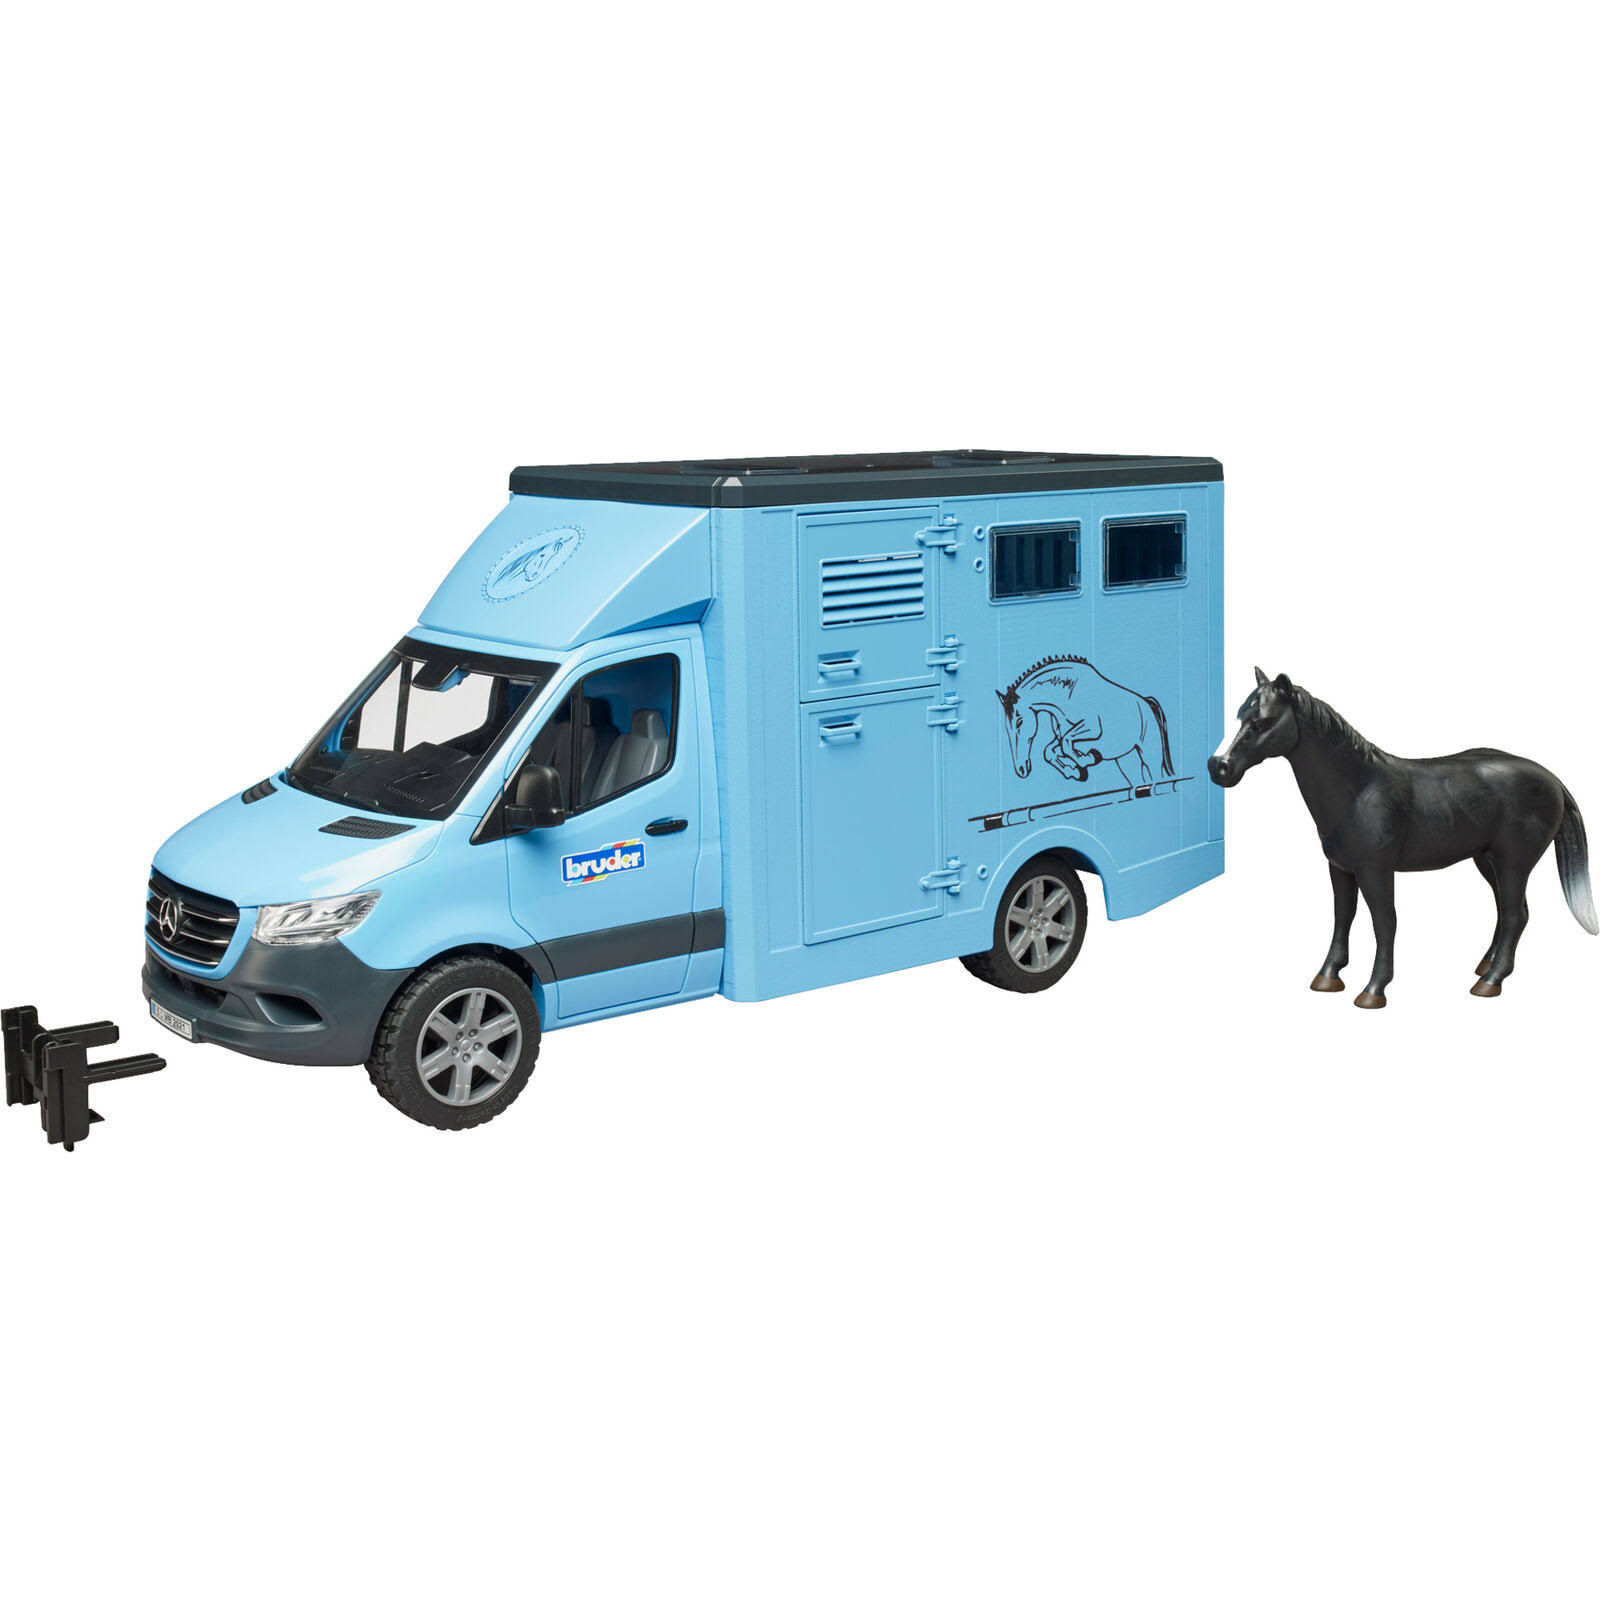 Bruder MB Sprinter Animal Transporter with 1 Horse